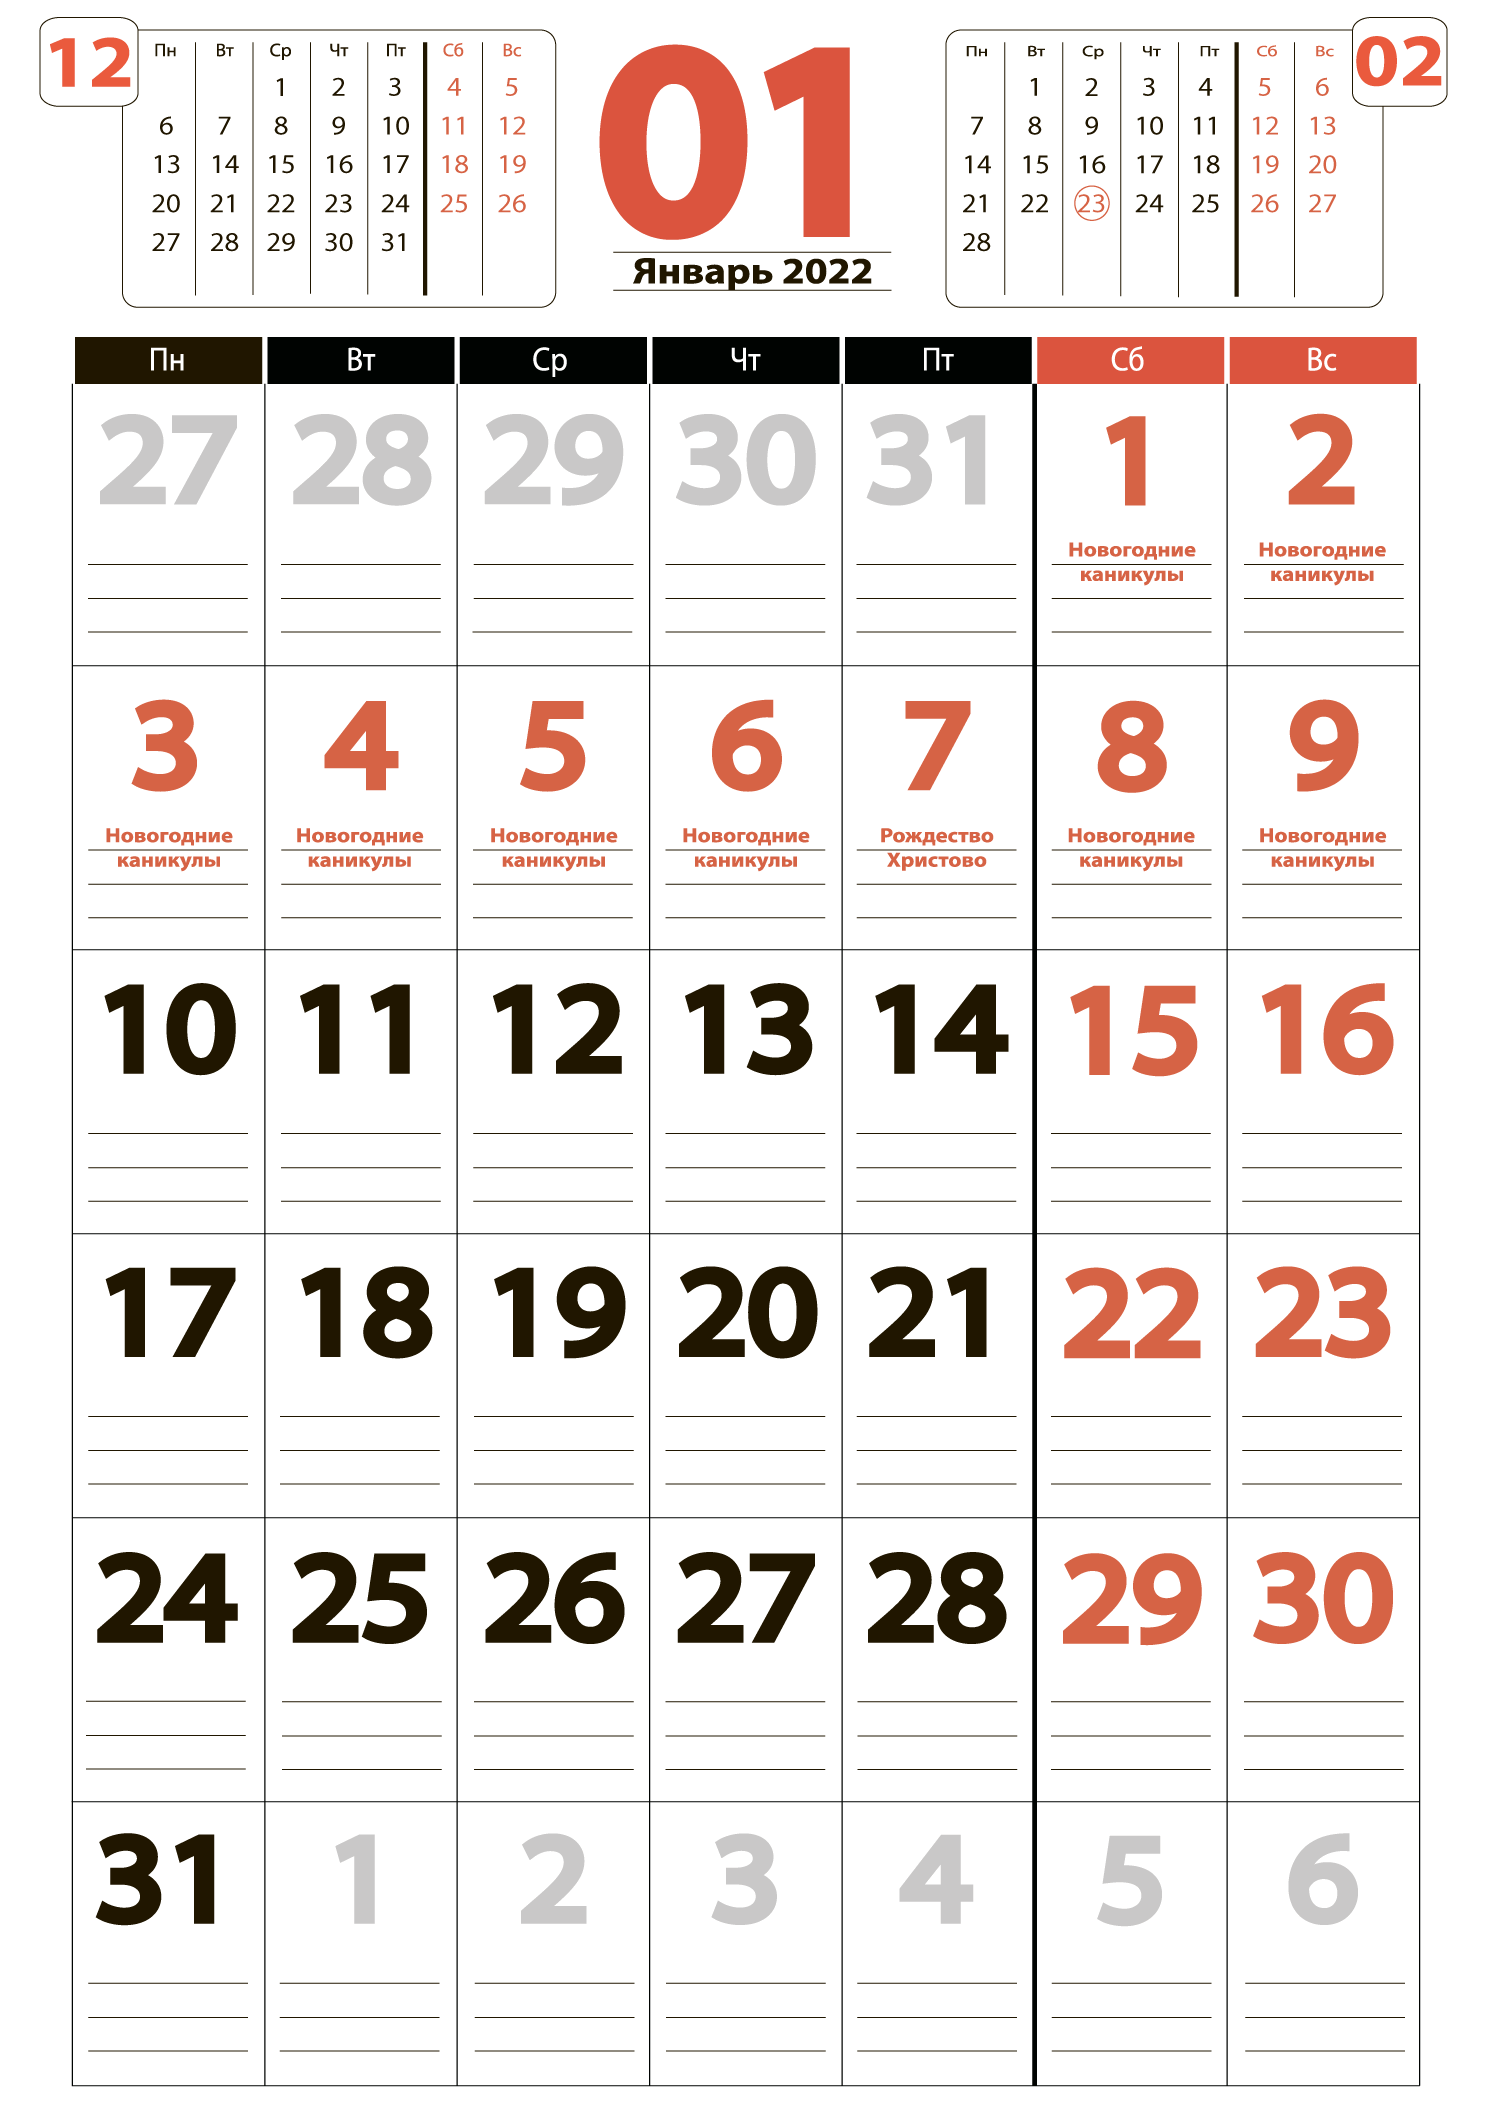 Печать крупного календаря на январь 2022